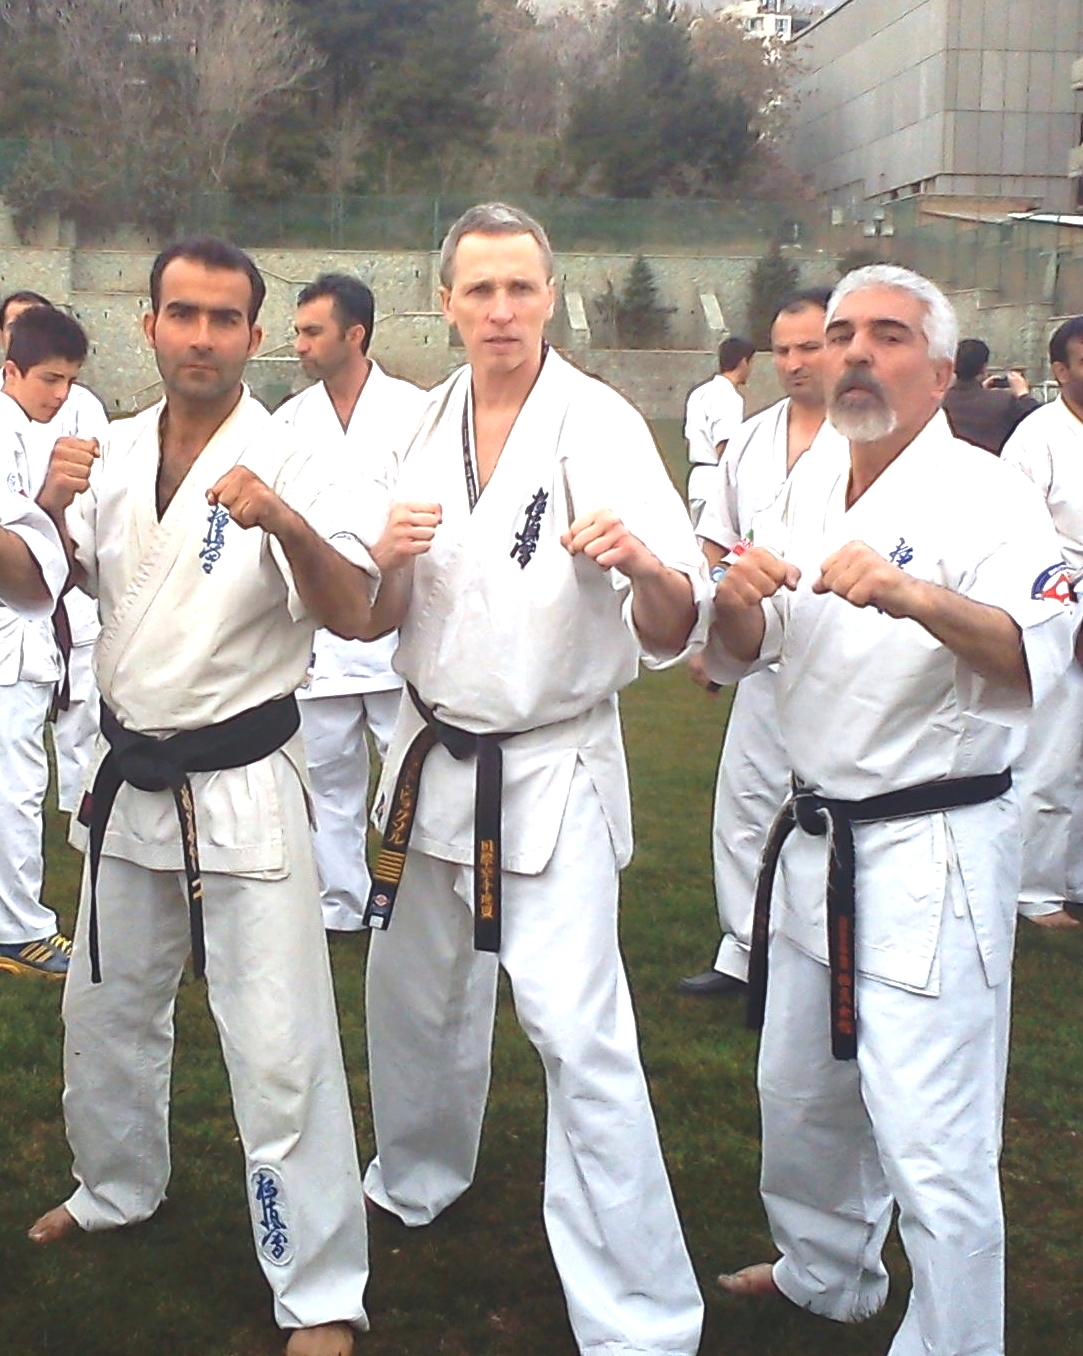 اولین کمپ بین المللی کیوکوشین کاراته اروپاIFK با حضور مدرس جهانی شیهان دیوید پیکتال